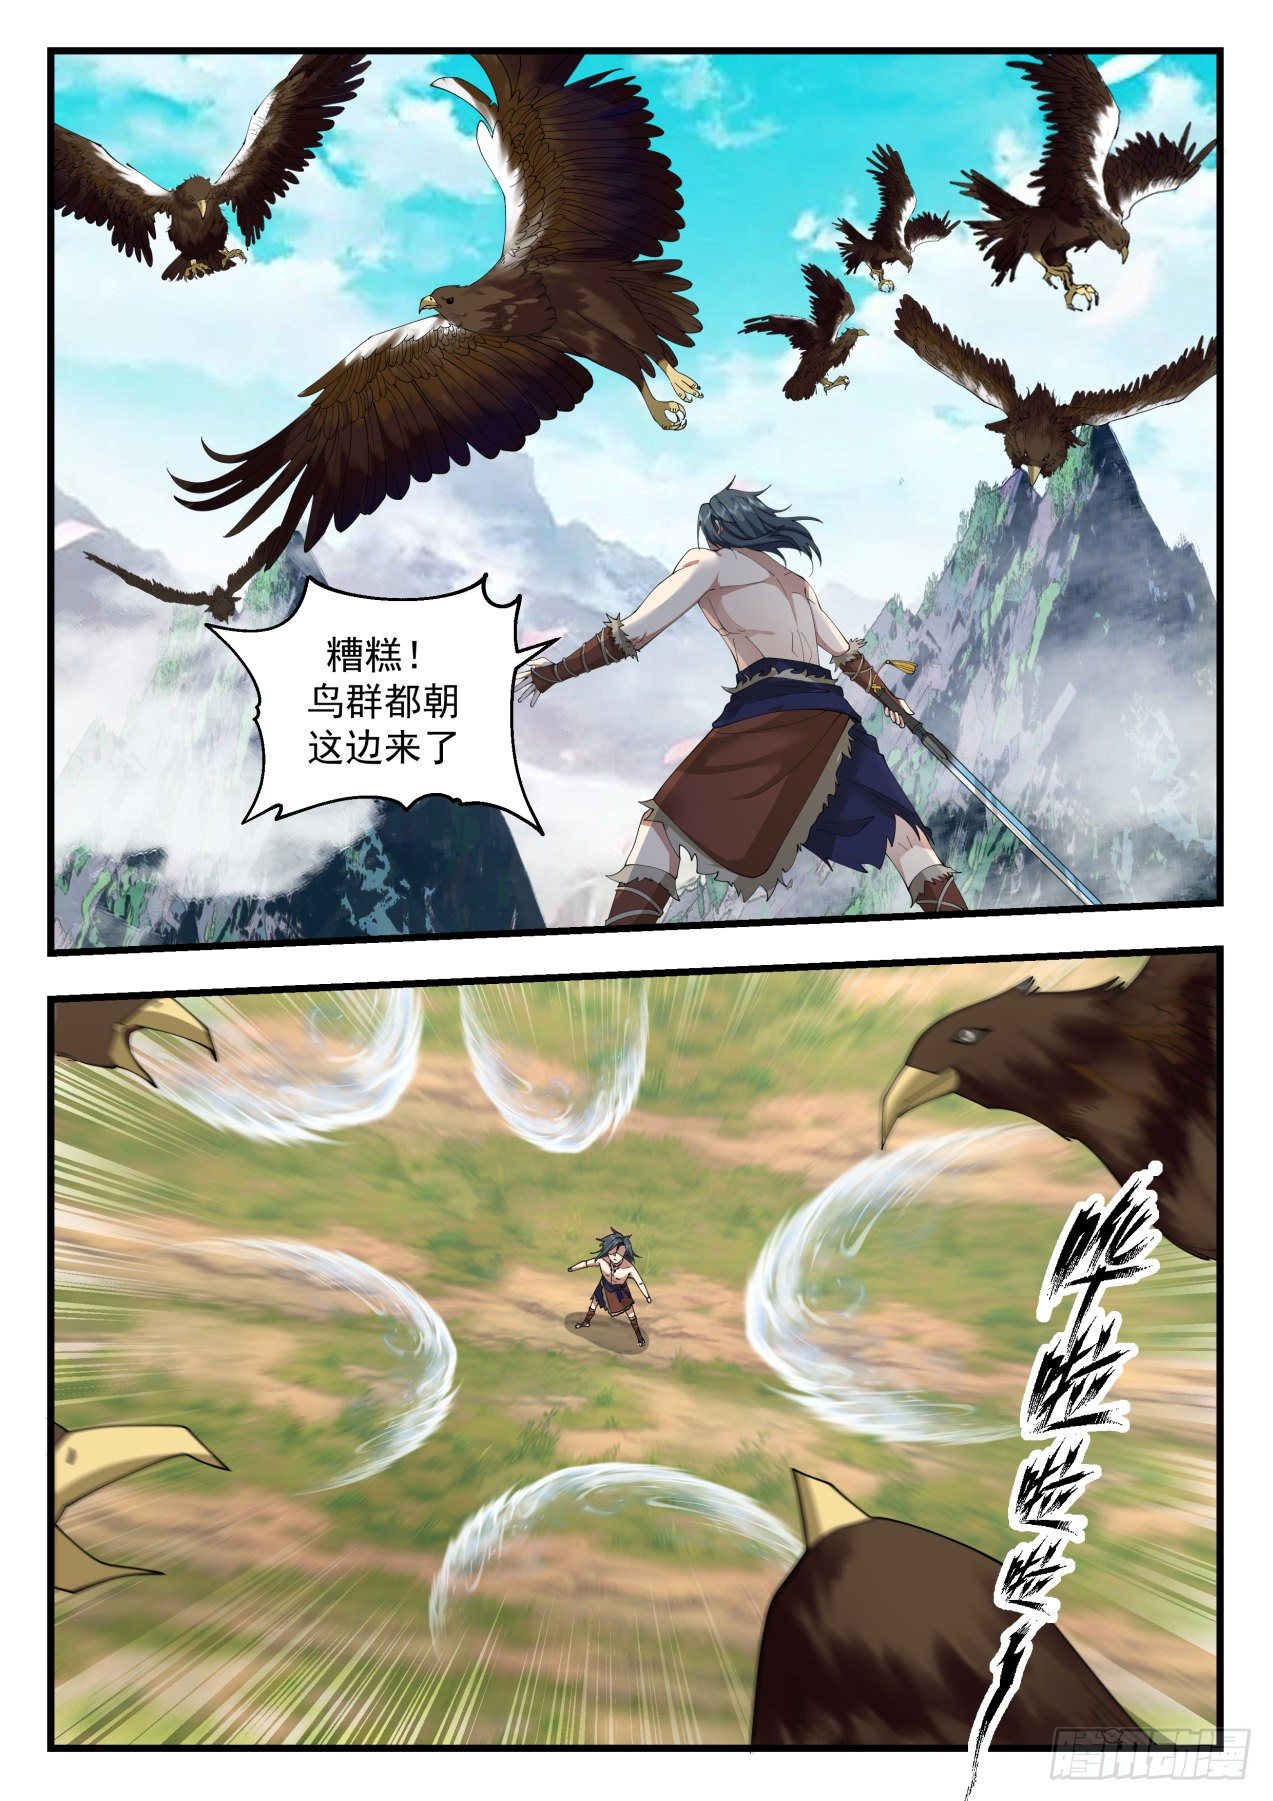 上古秘境篇-驯服鹰王5